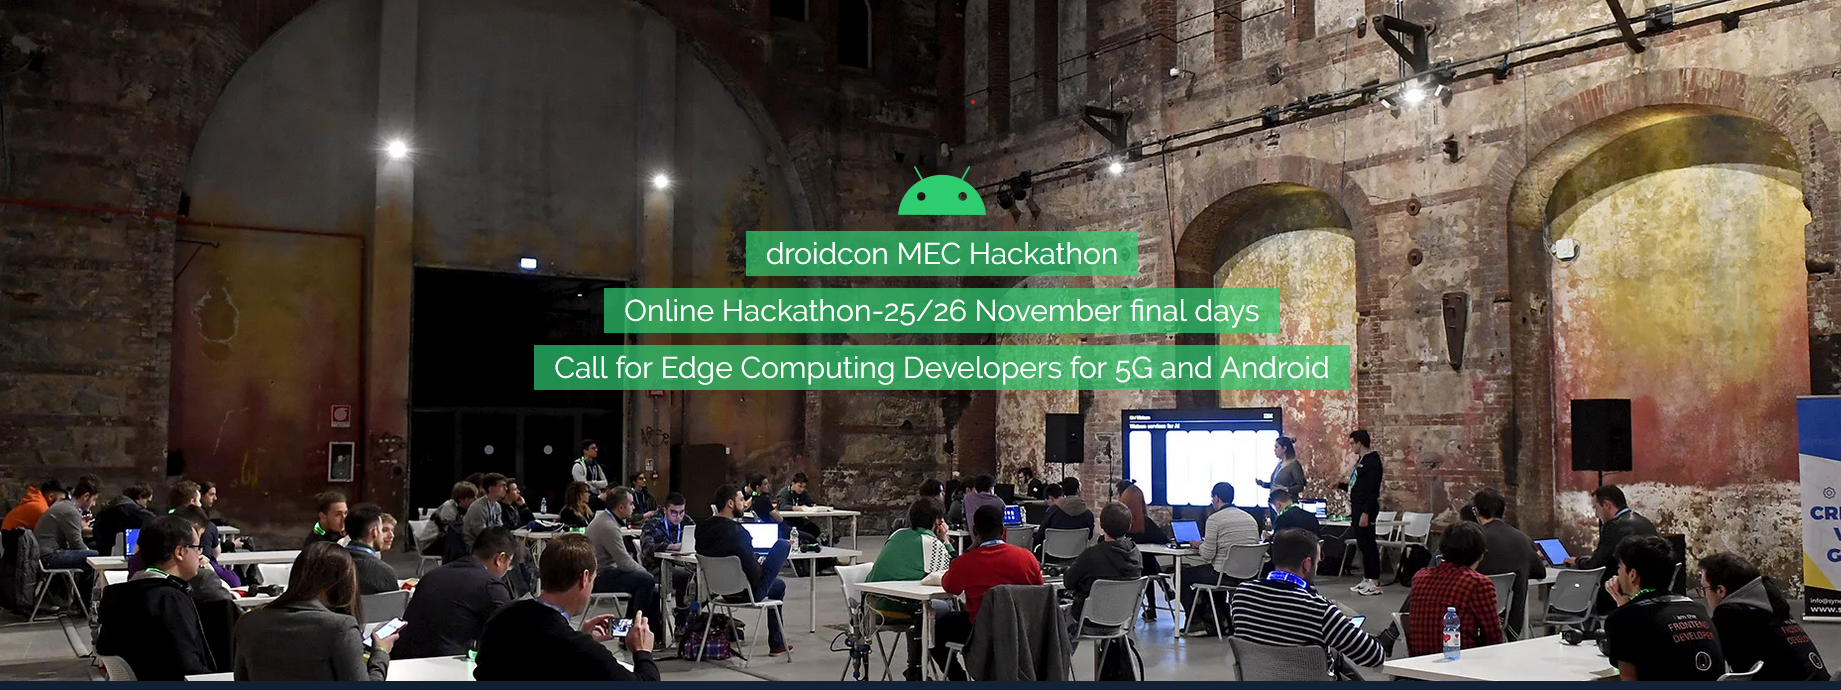 File:Droidcon hackathon 2020.png